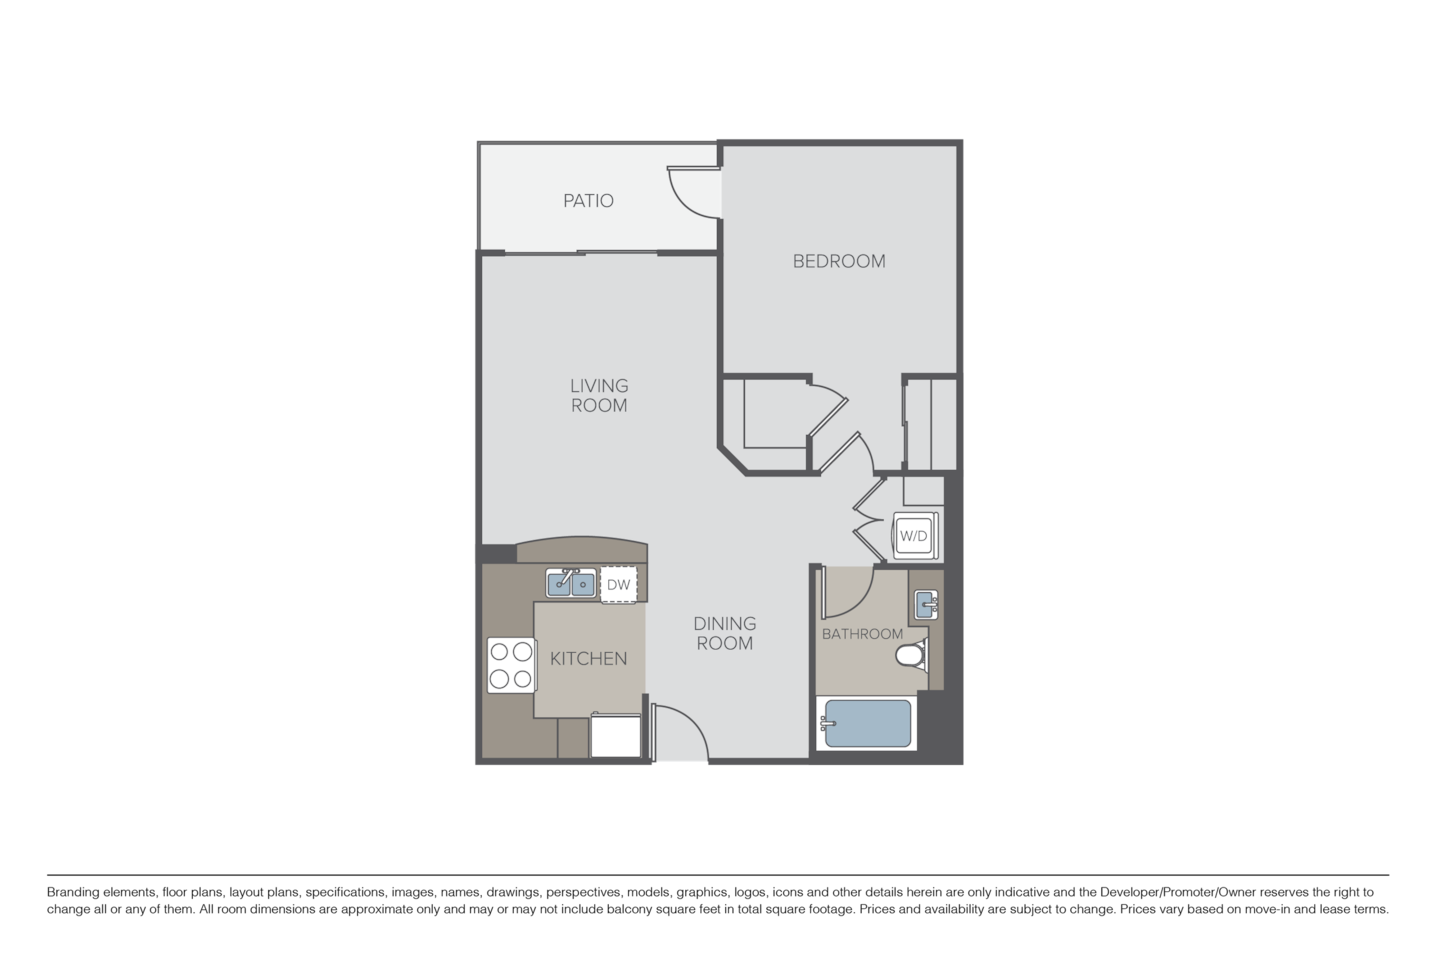 Floorplan diagram for The Arroyo, showing 1 bedroom